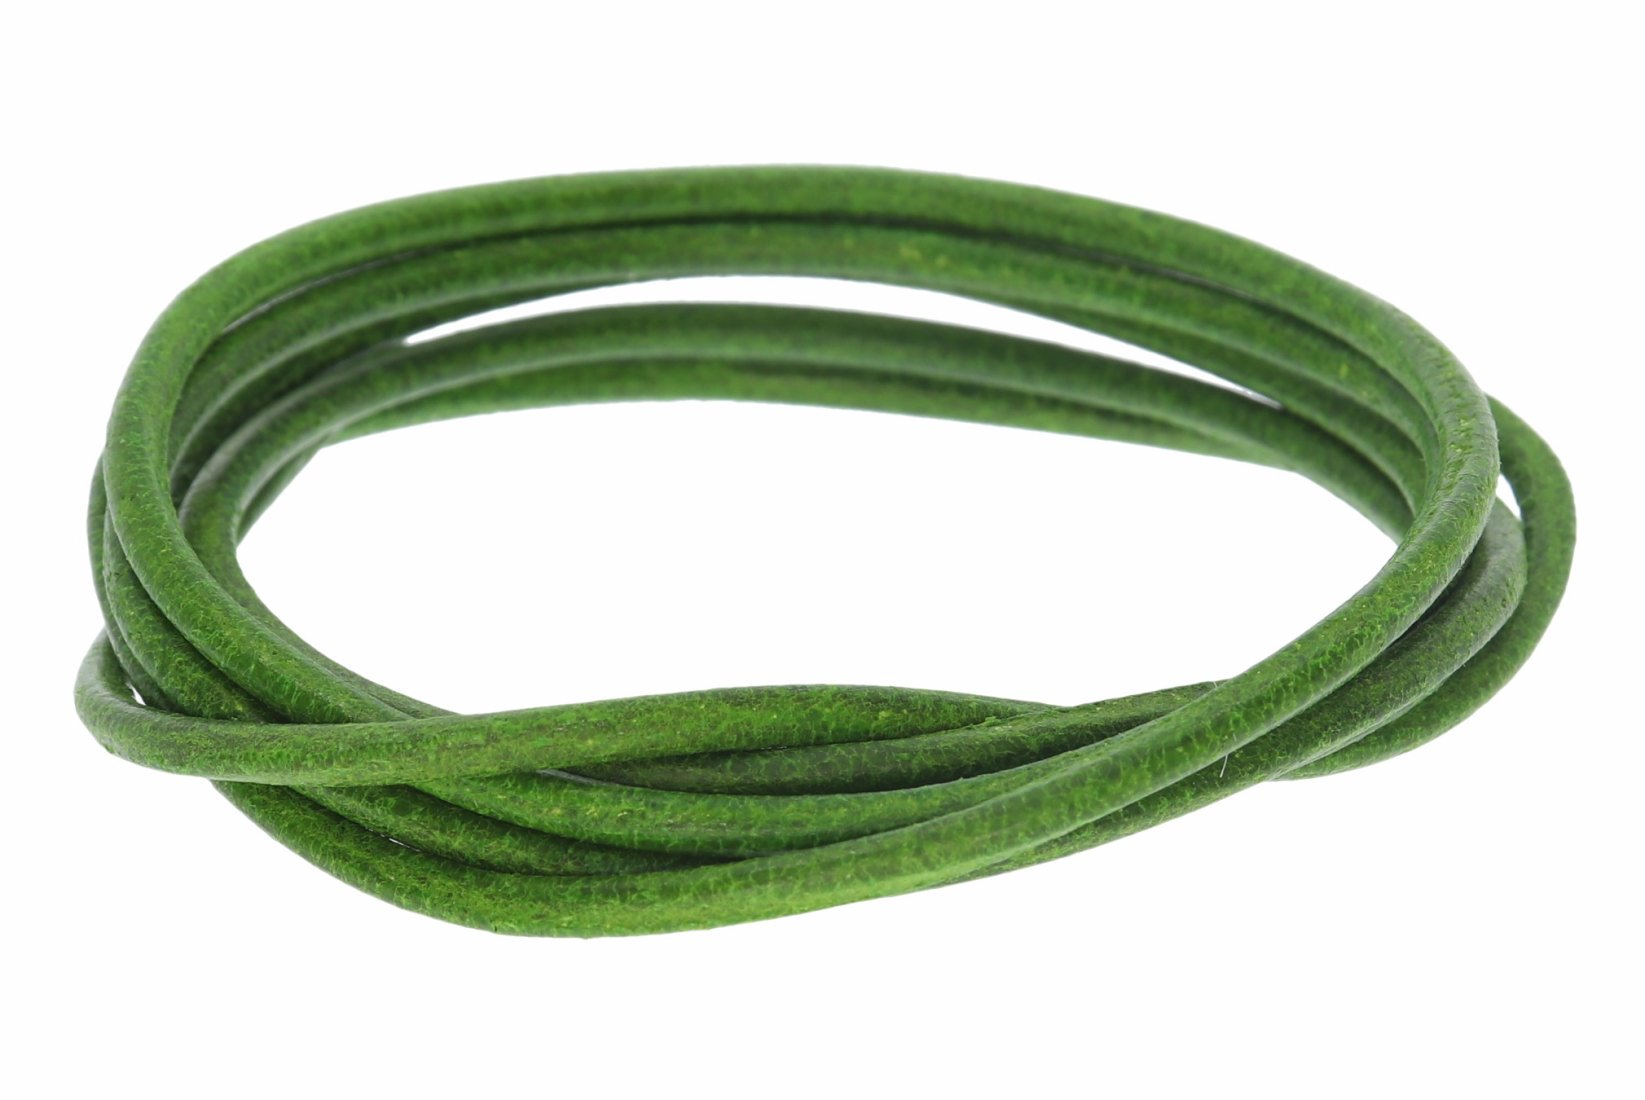 Lederband Apfelgrün -  Lederbänder Lederriemen Lederschnur 2 mm Ø - 100cm L208